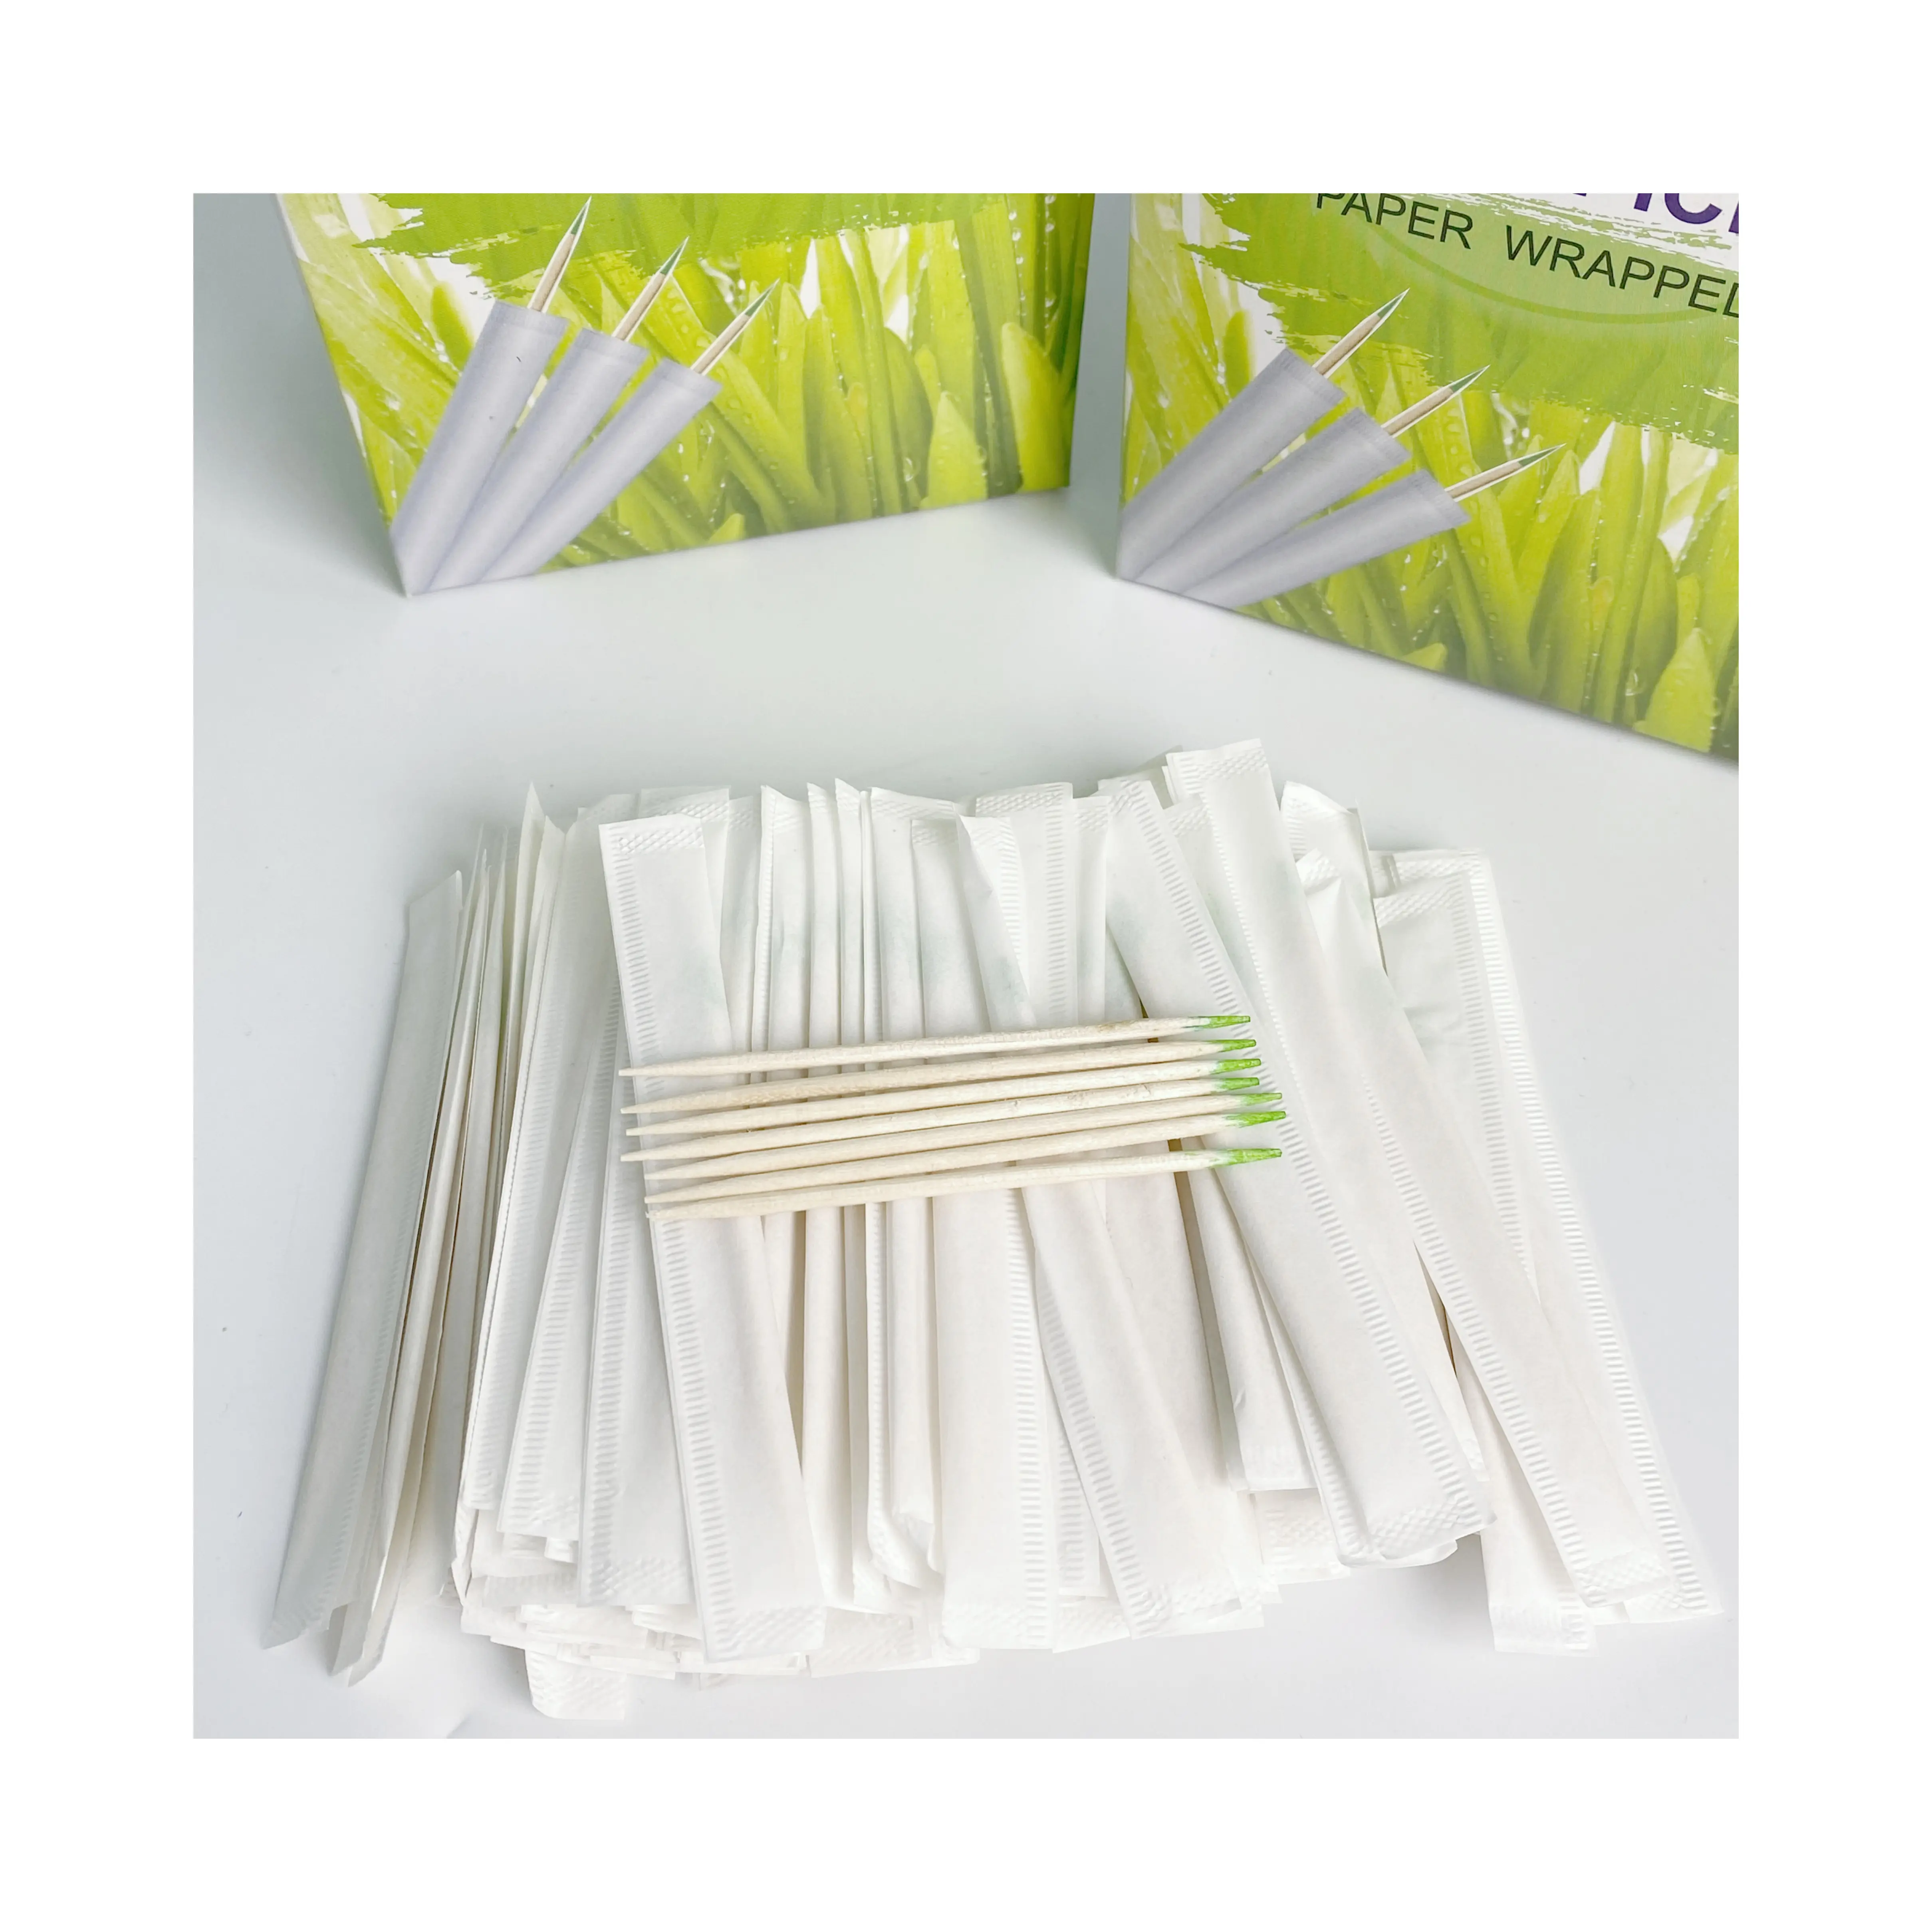 Holz Bambus einzeln Zelloverpackung Geschmack Zahnstoßstöpsel 2,5 Zoll Pack 1000